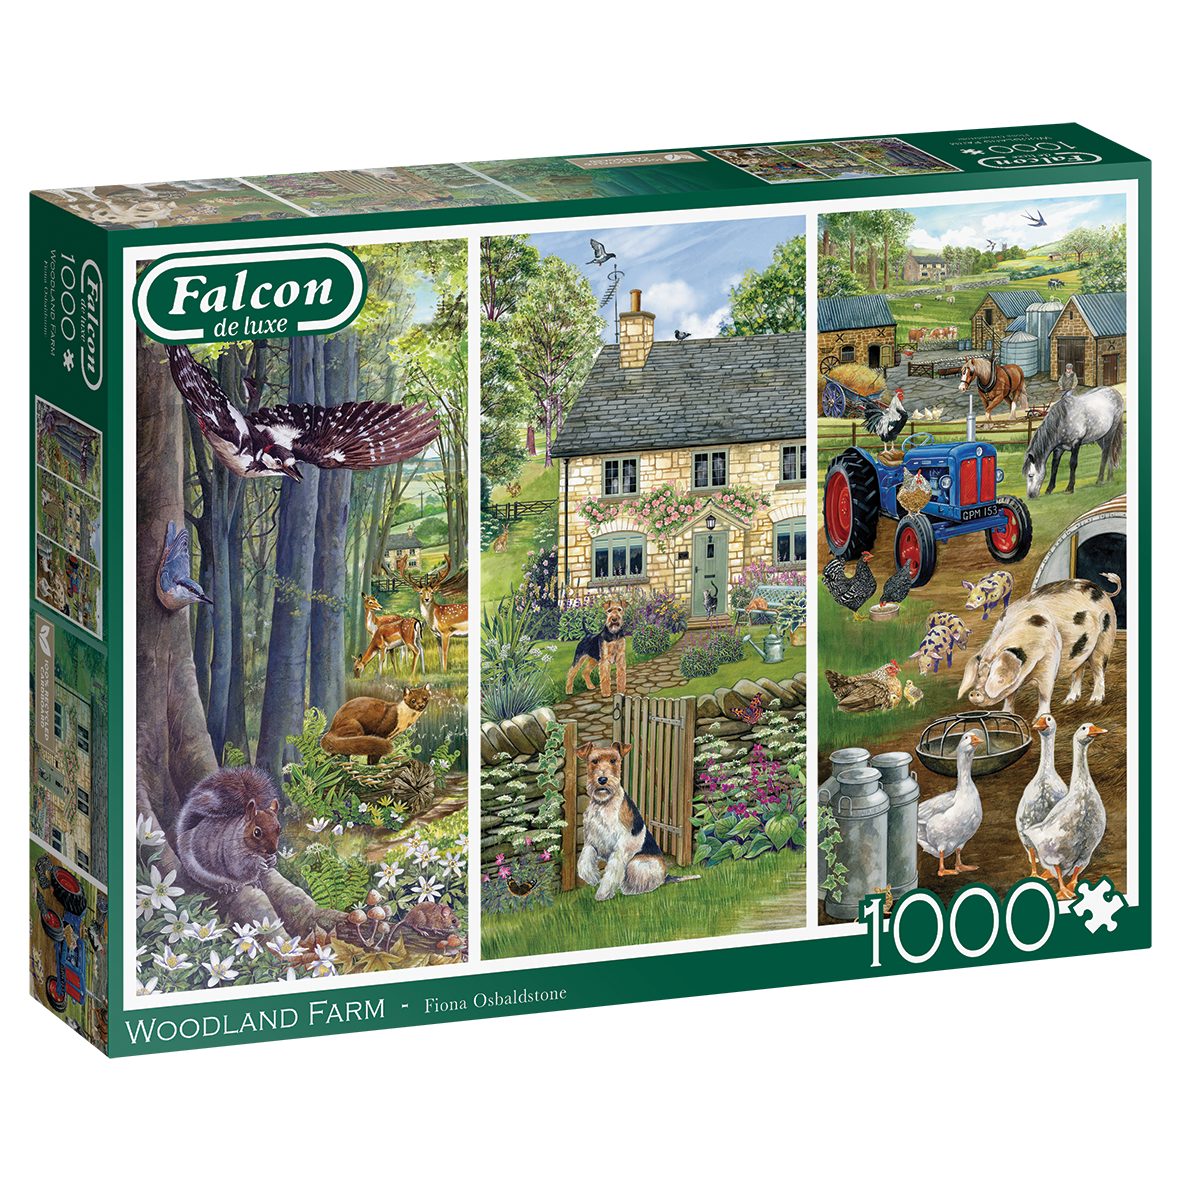 Jumbo Spiele Puzzle Falcon de luxe Woodland Farm 1000 Teile Puzzle, 1000 Puzzleteile